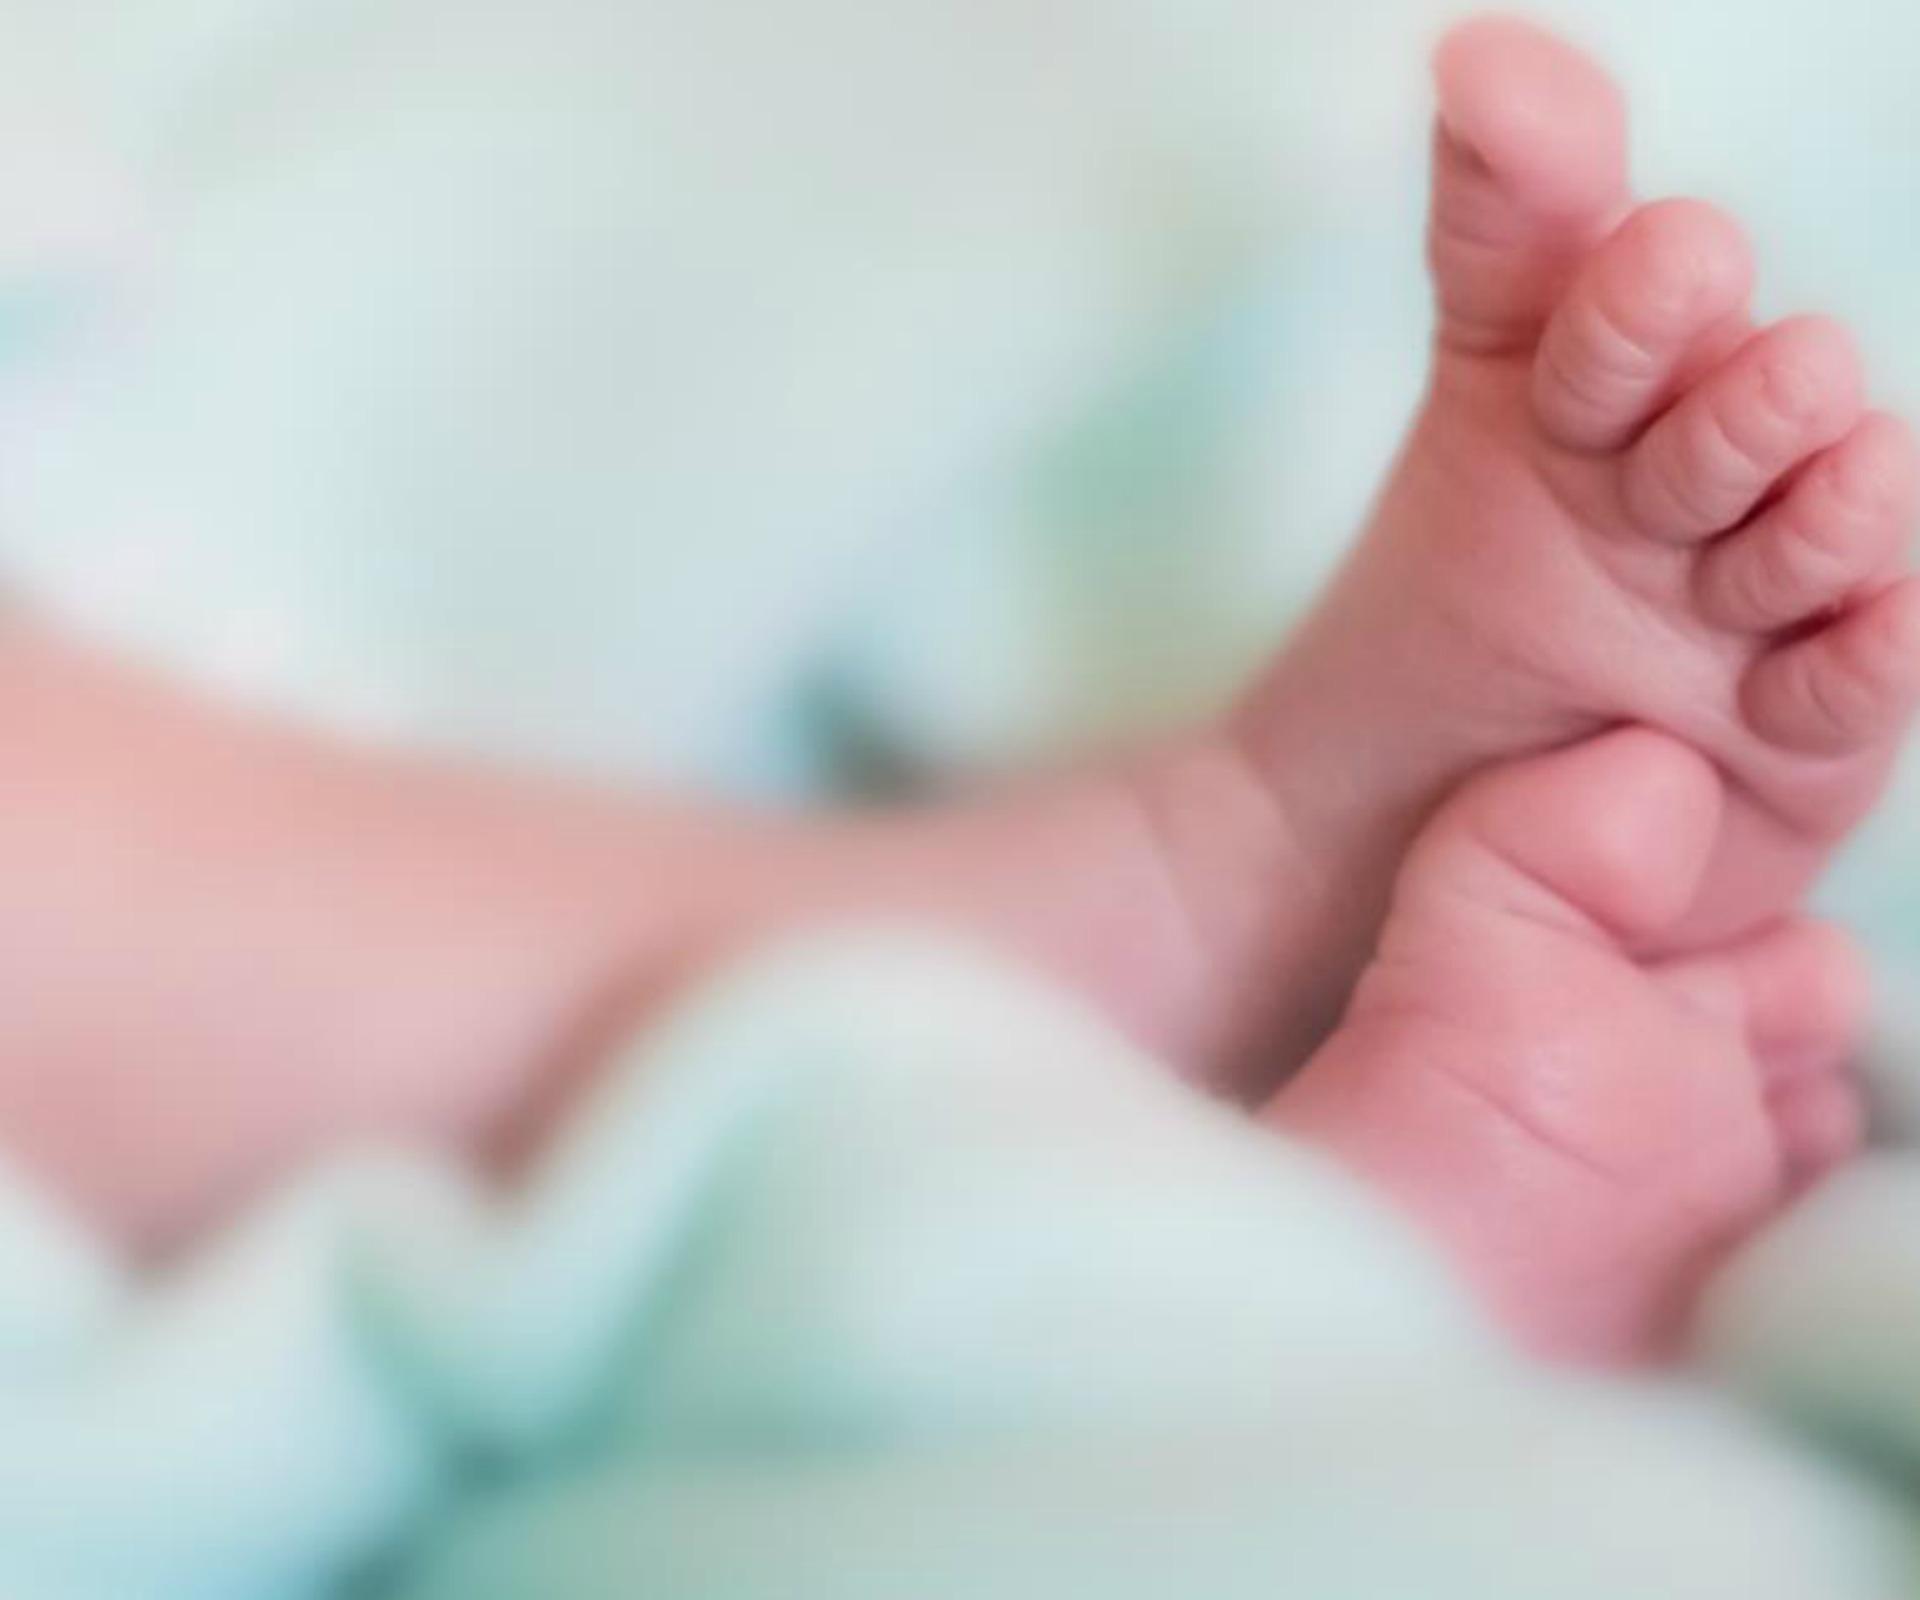 Deadly hospital mix up kills newborn